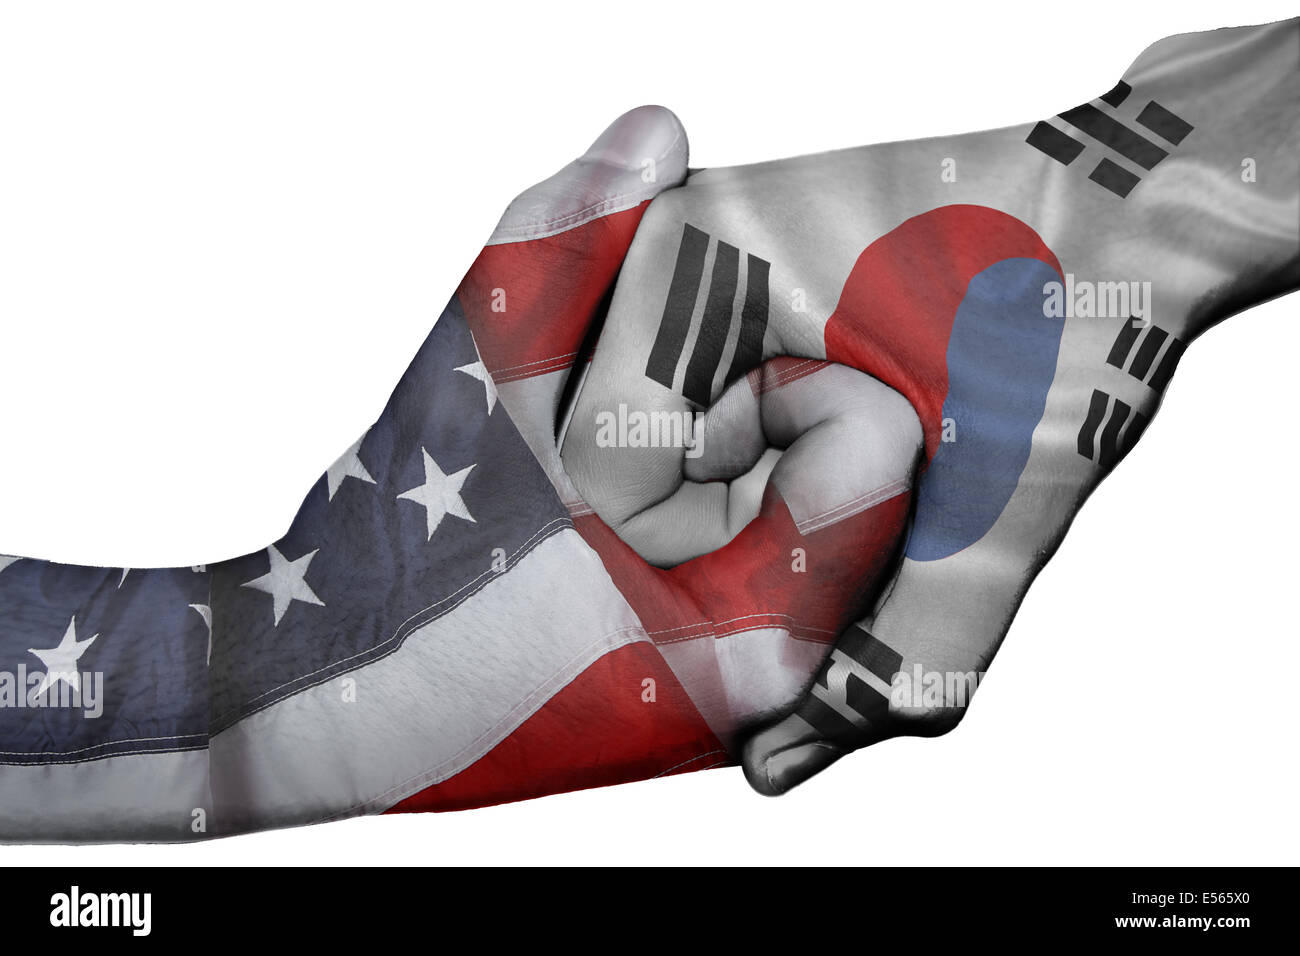 Handshake diplomatiche tra paesi: bandiere di Stati Uniti e Corea del Sud sovradipinta le due mani Foto Stock